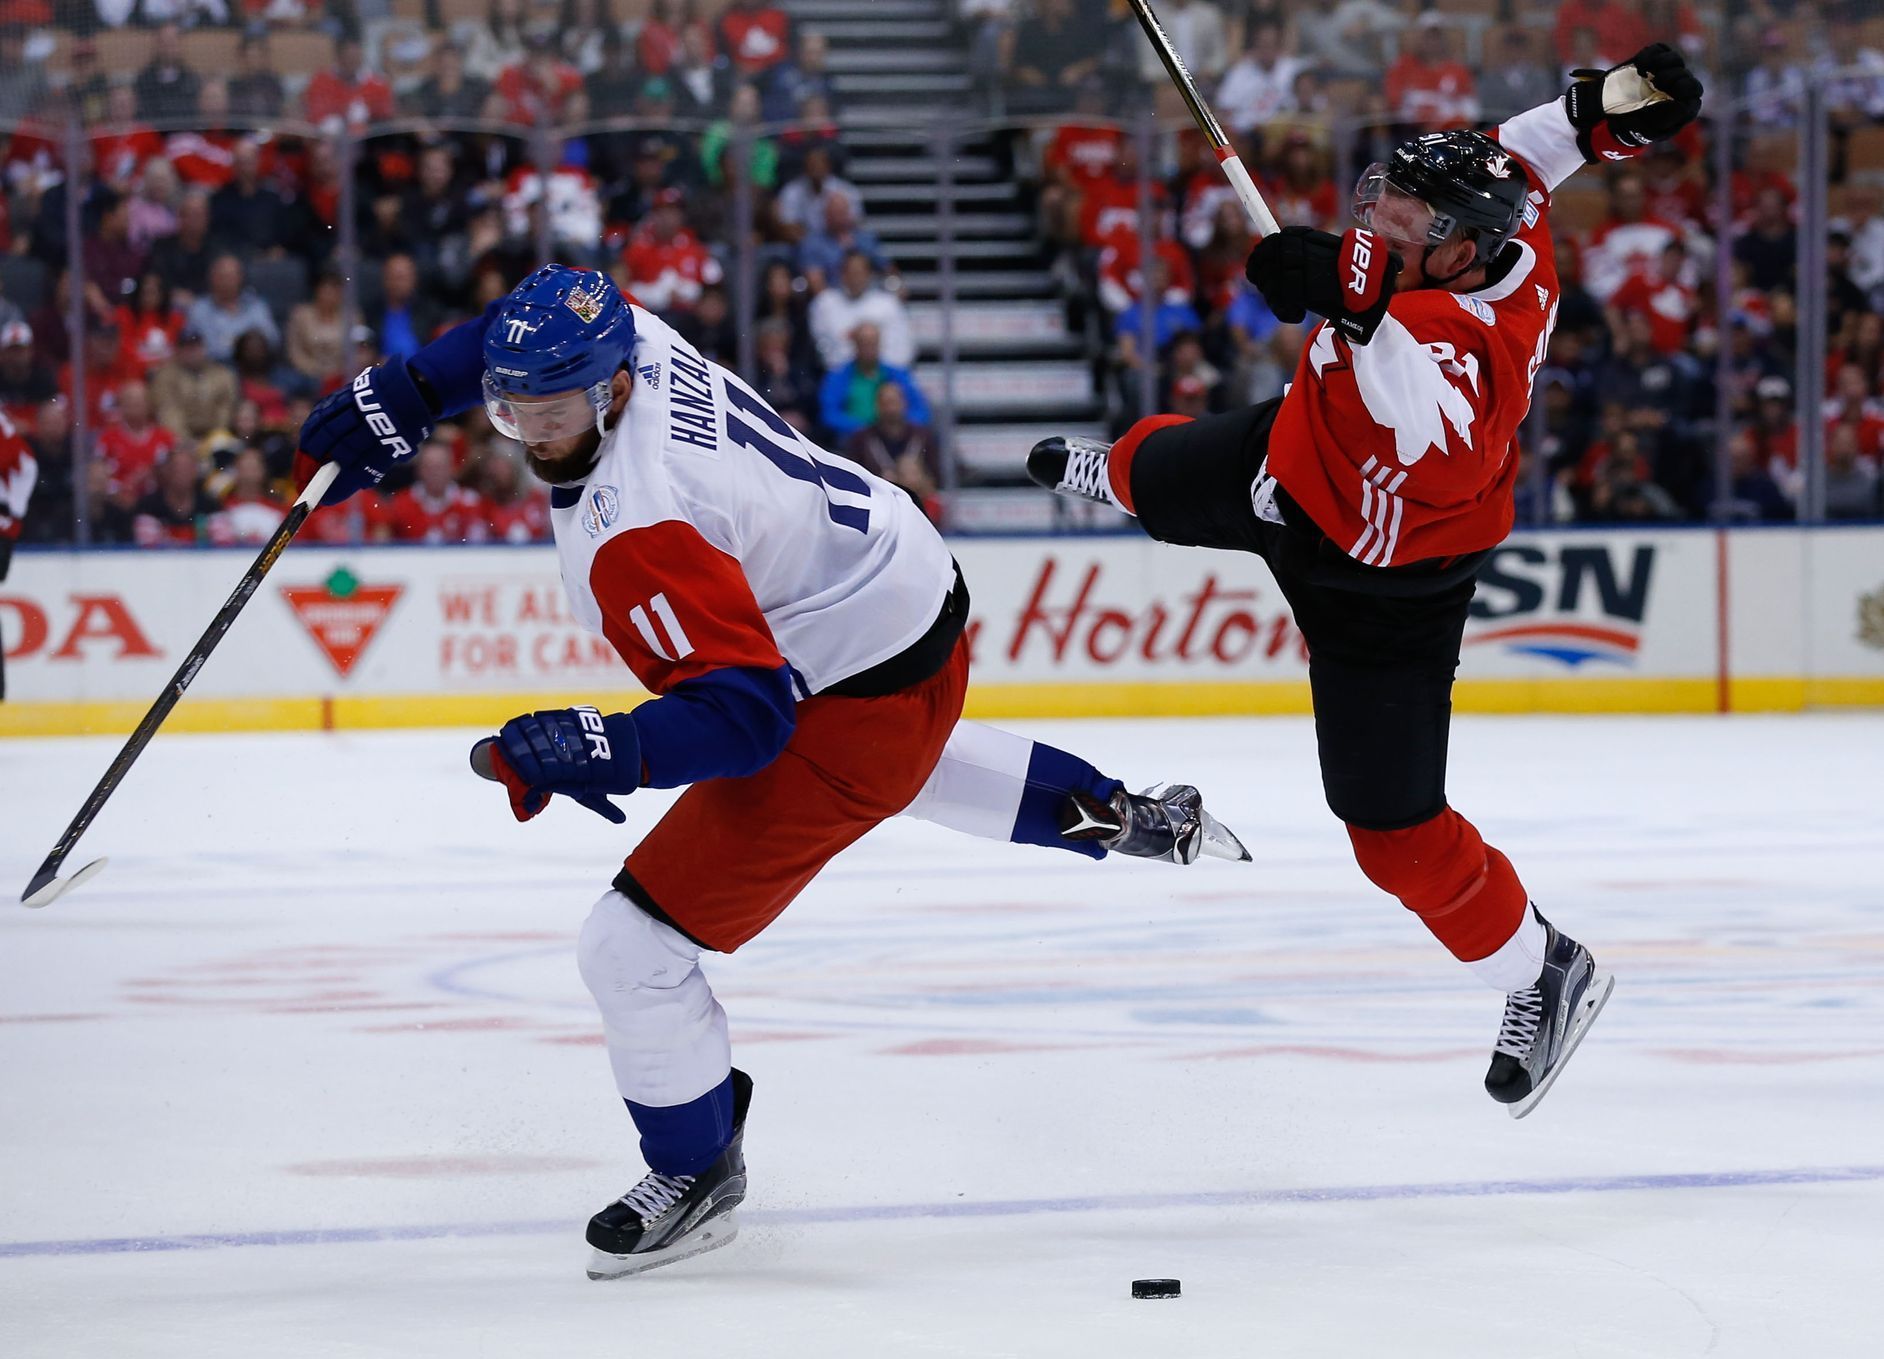 Kanada - Česko, hokejový Světový pohár 2016